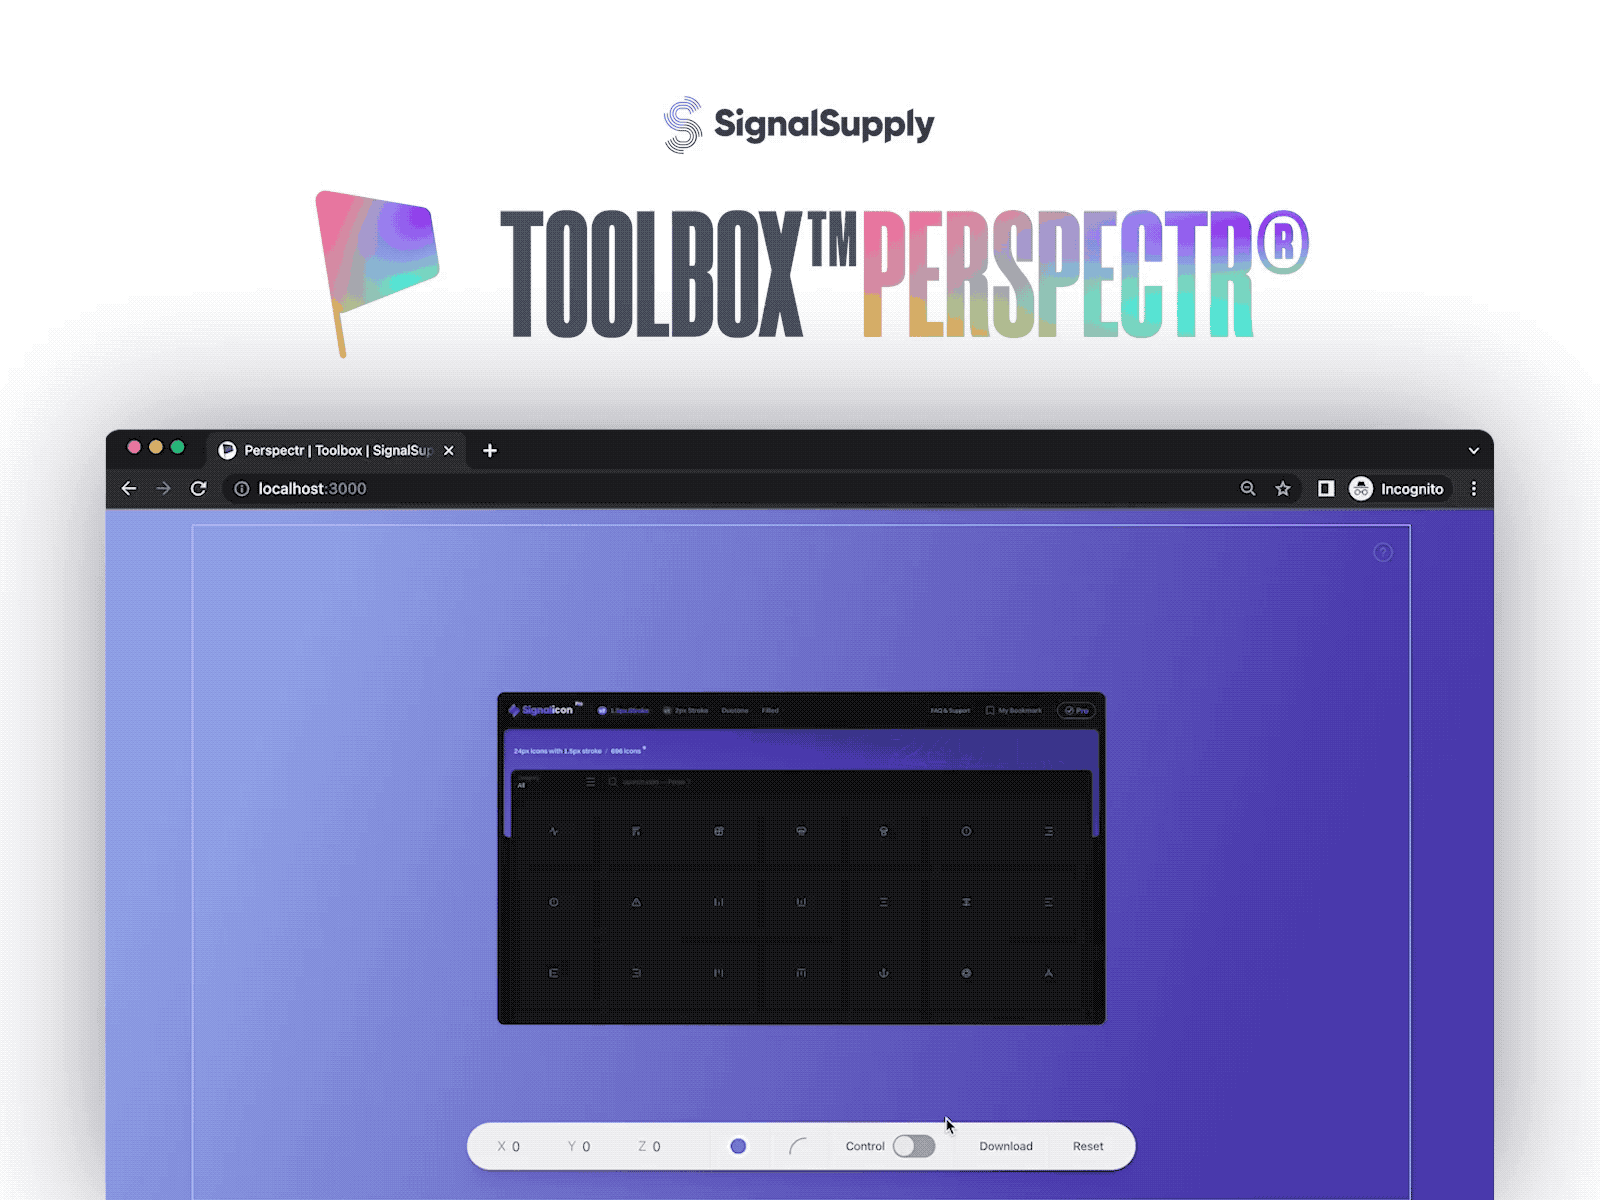 SignalSupply Toolbox: Perspectr signalsupply webapp